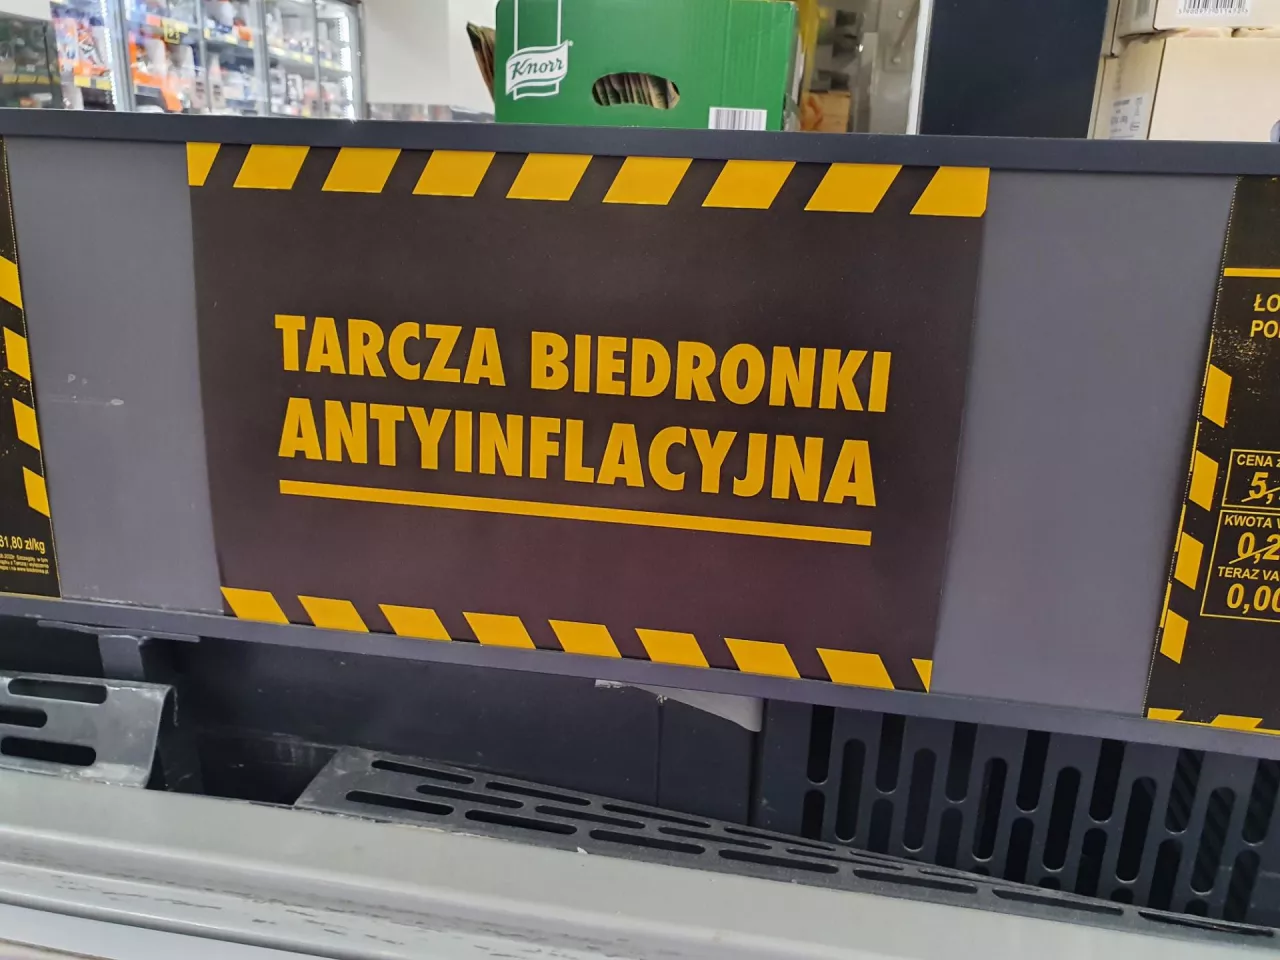 Tarcza antyinflacyjna Biedronki znalazła się pod lupą UOKiK-u w ub. roku (fot. wiadomoscihandlowe.pl)